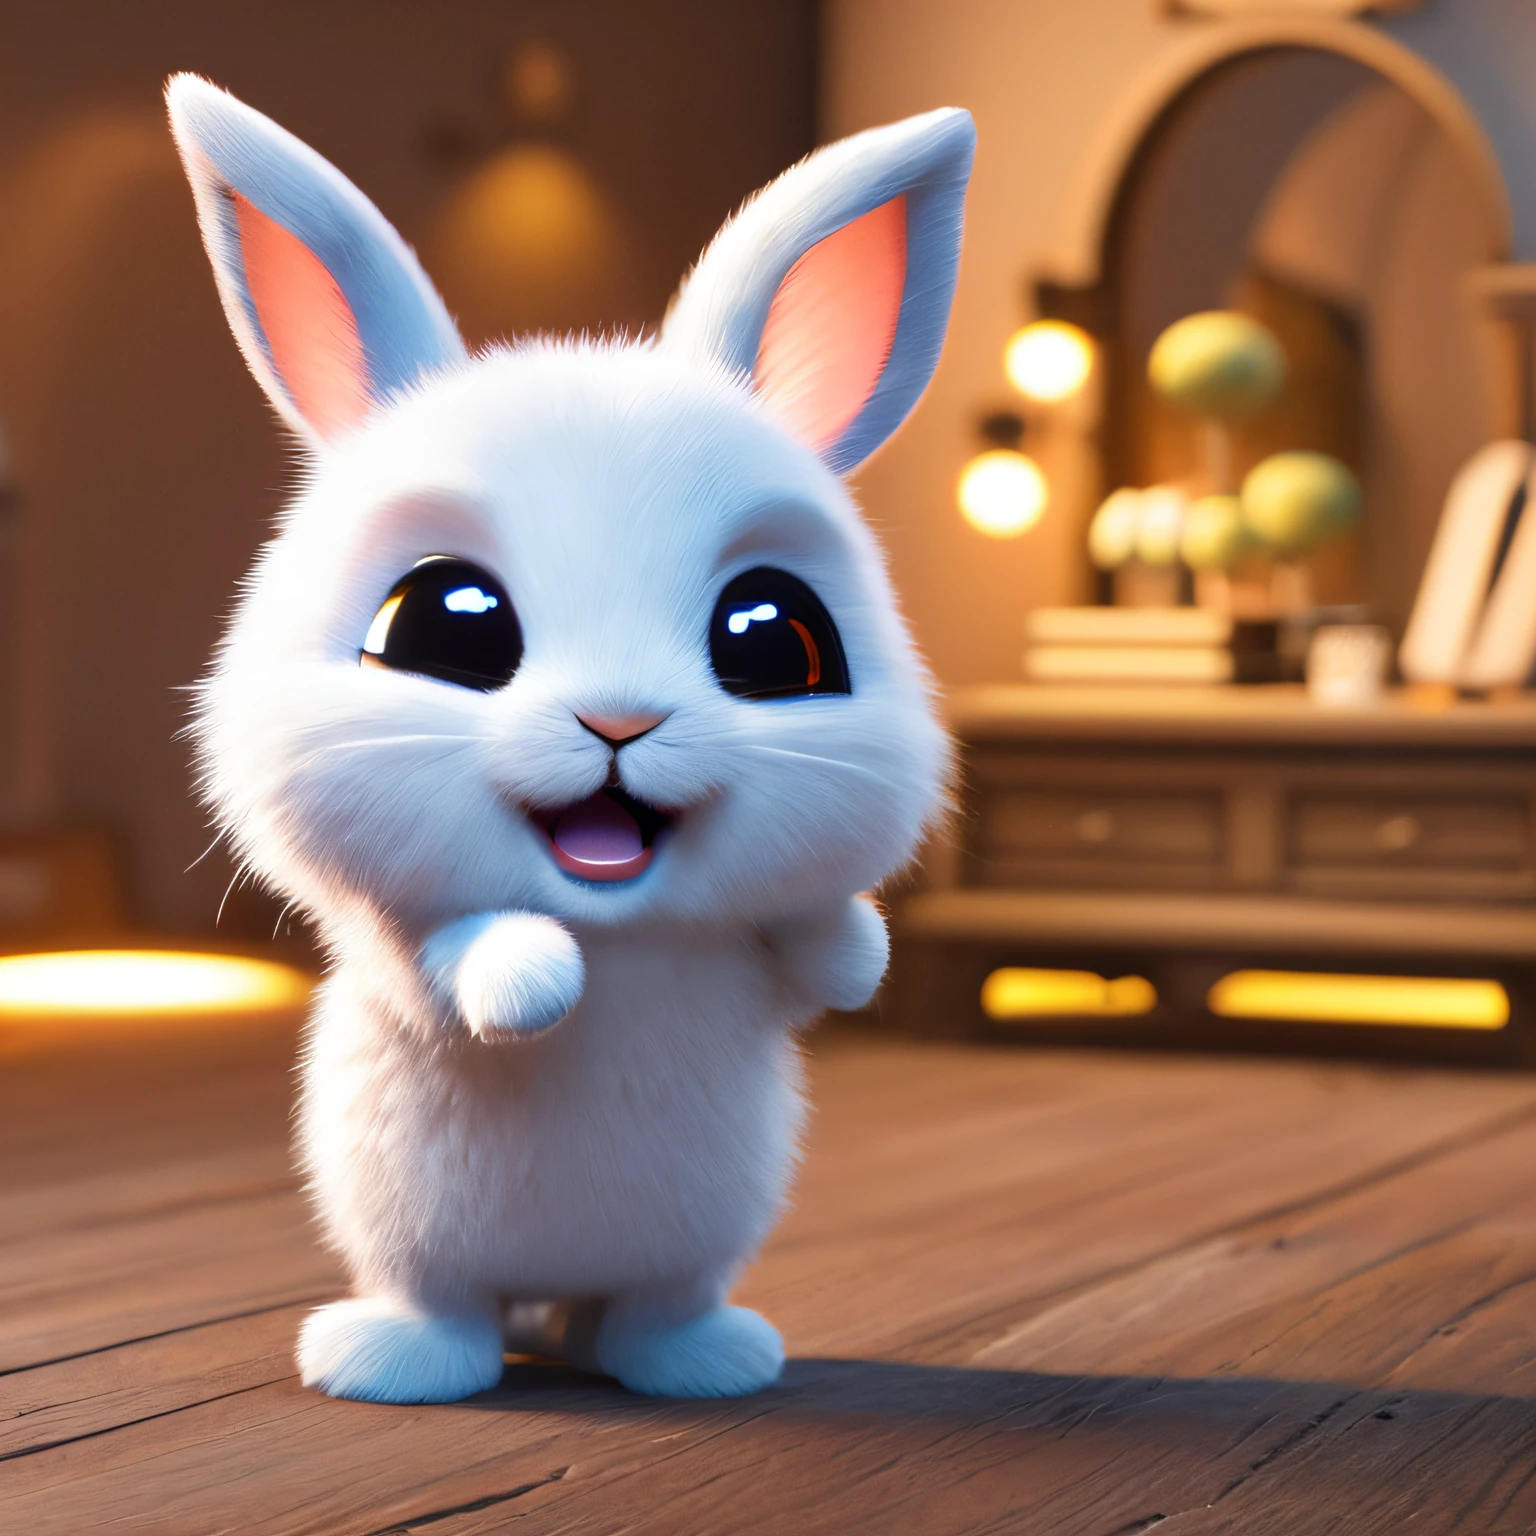 Милый очаровательный маленький кролик машет мне рукой и улыбается, приветствуя меня., Нереальный движок, уютное внутреннее освещение, арт-станция, Детализированная цифровая живопись, Кинематографический, Дизайн персонажей: Марк Райден, Pixar и Хаяо Миядзаки., Нереально 5, ошеломляет, гиперреалистичный, Октановый рендер, 3ДМДТ1